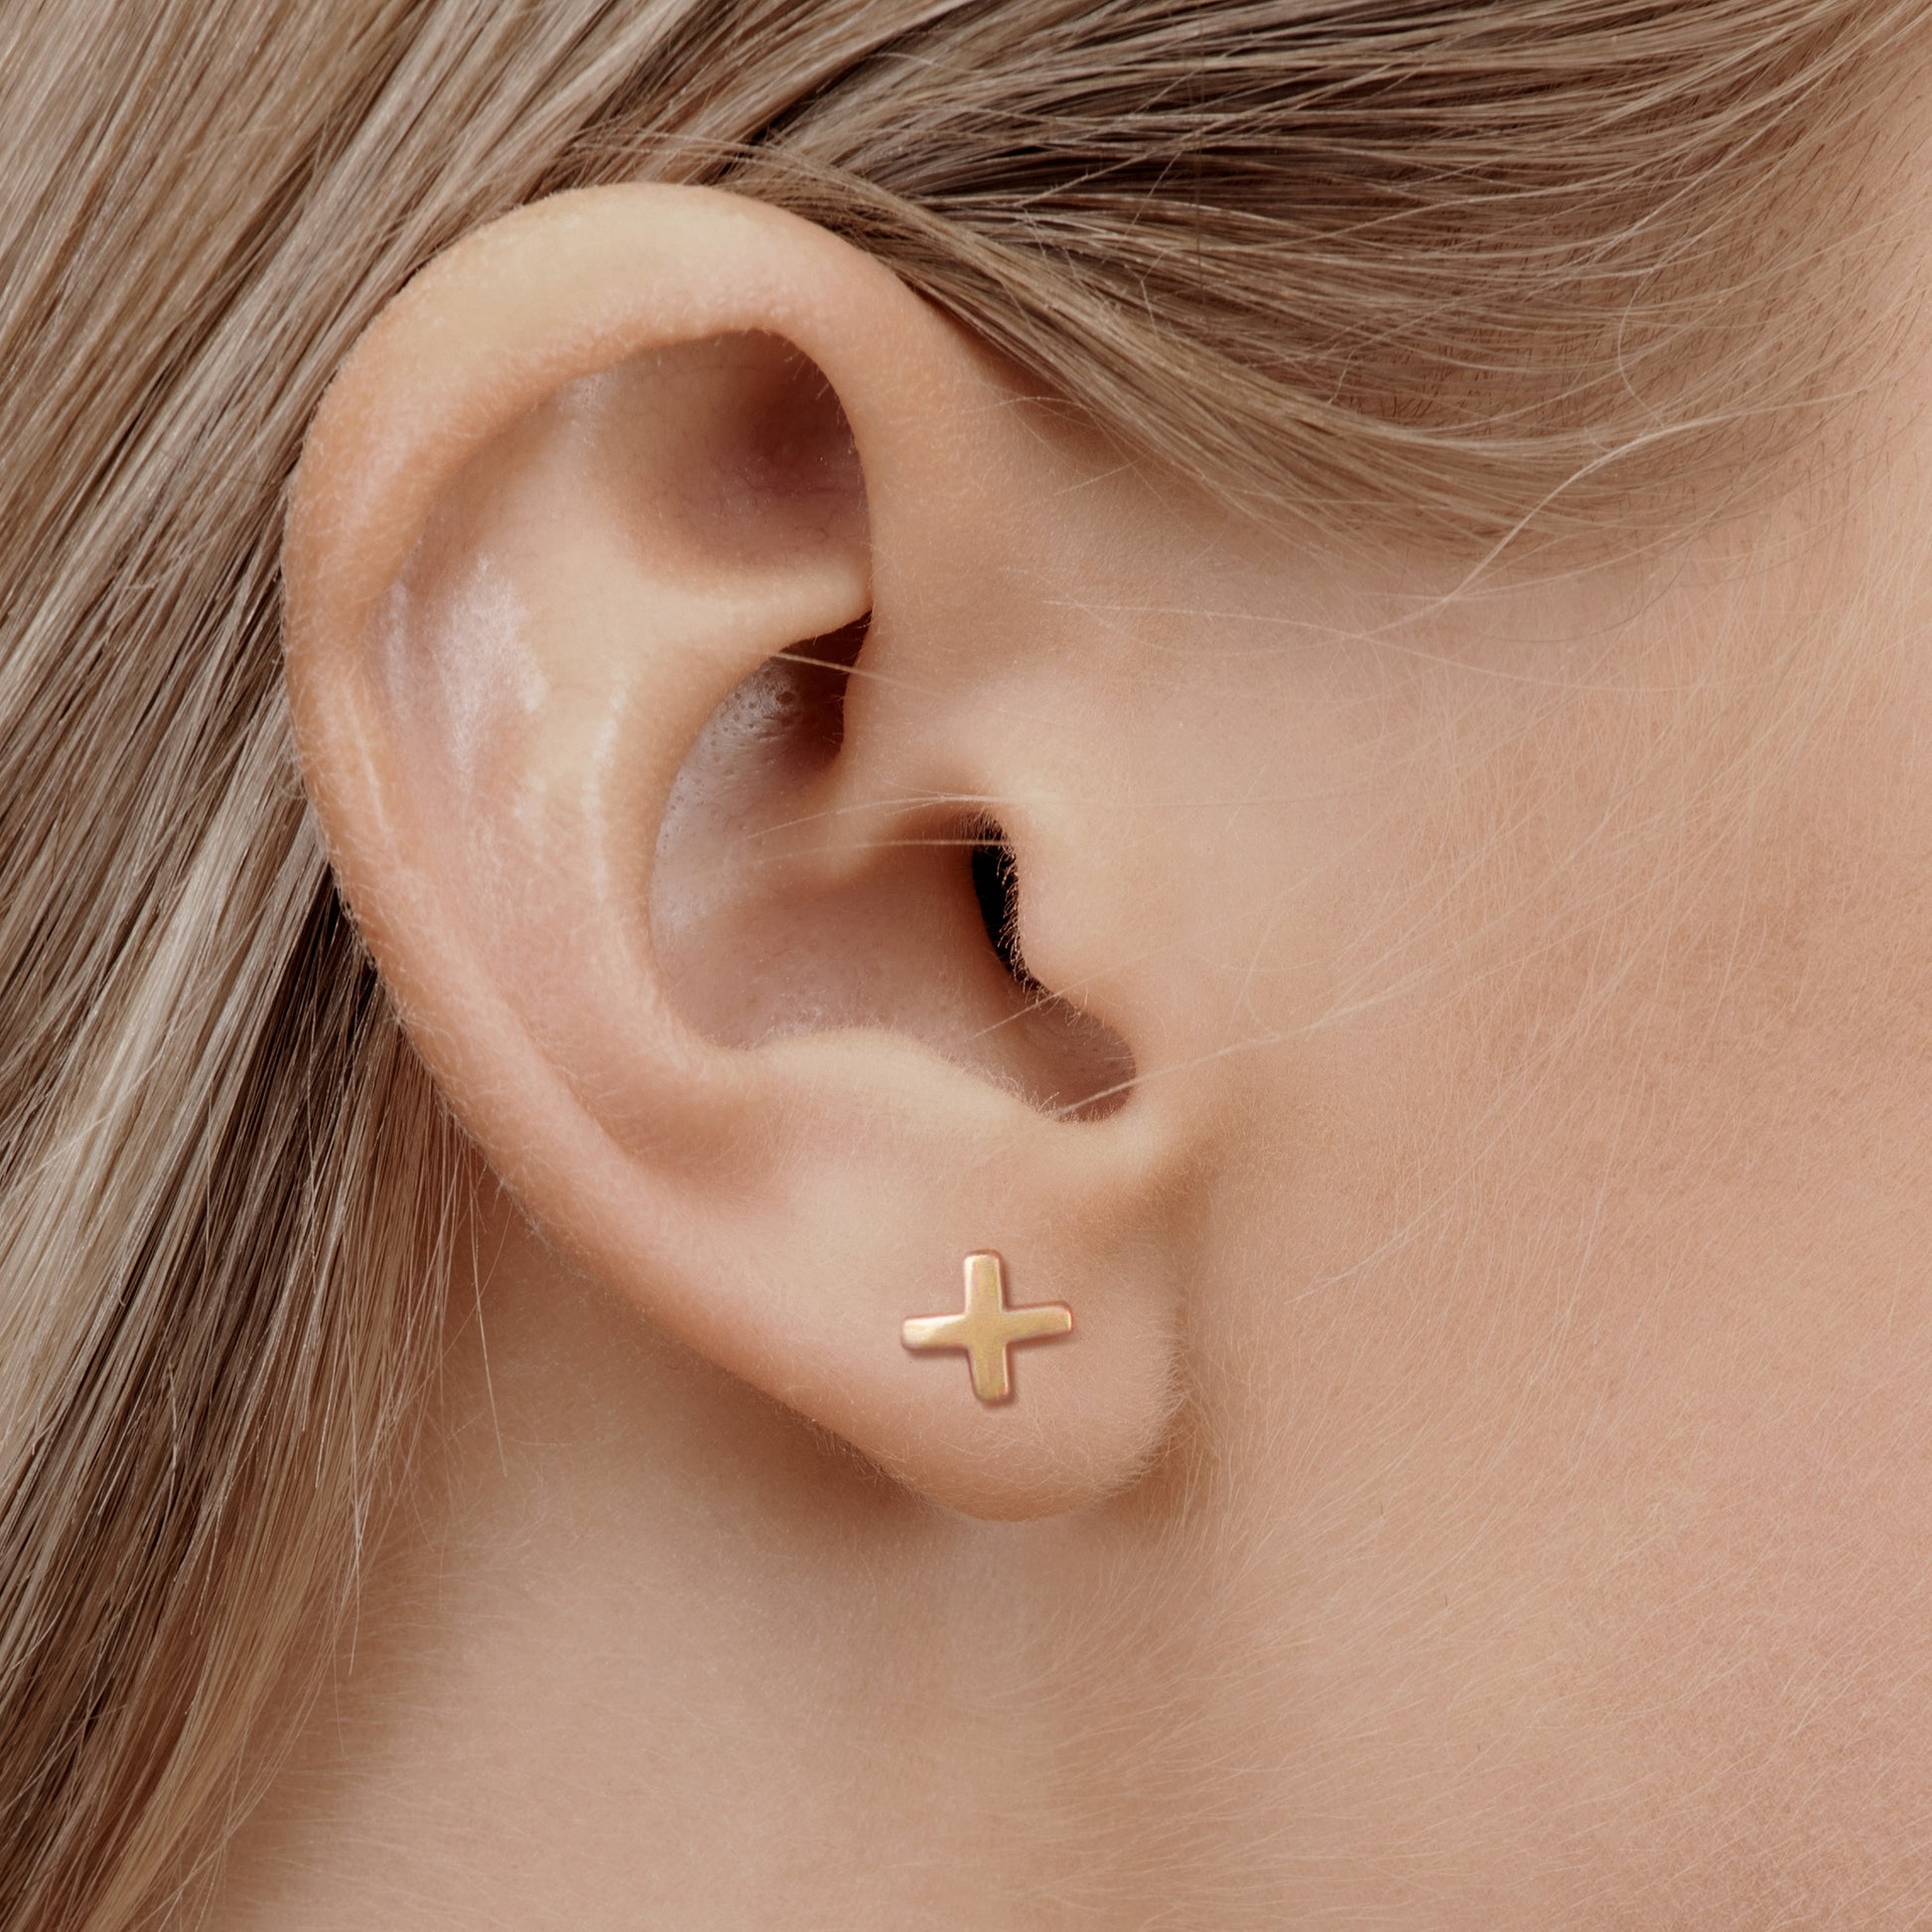 Rose gold cross earring in nurse model